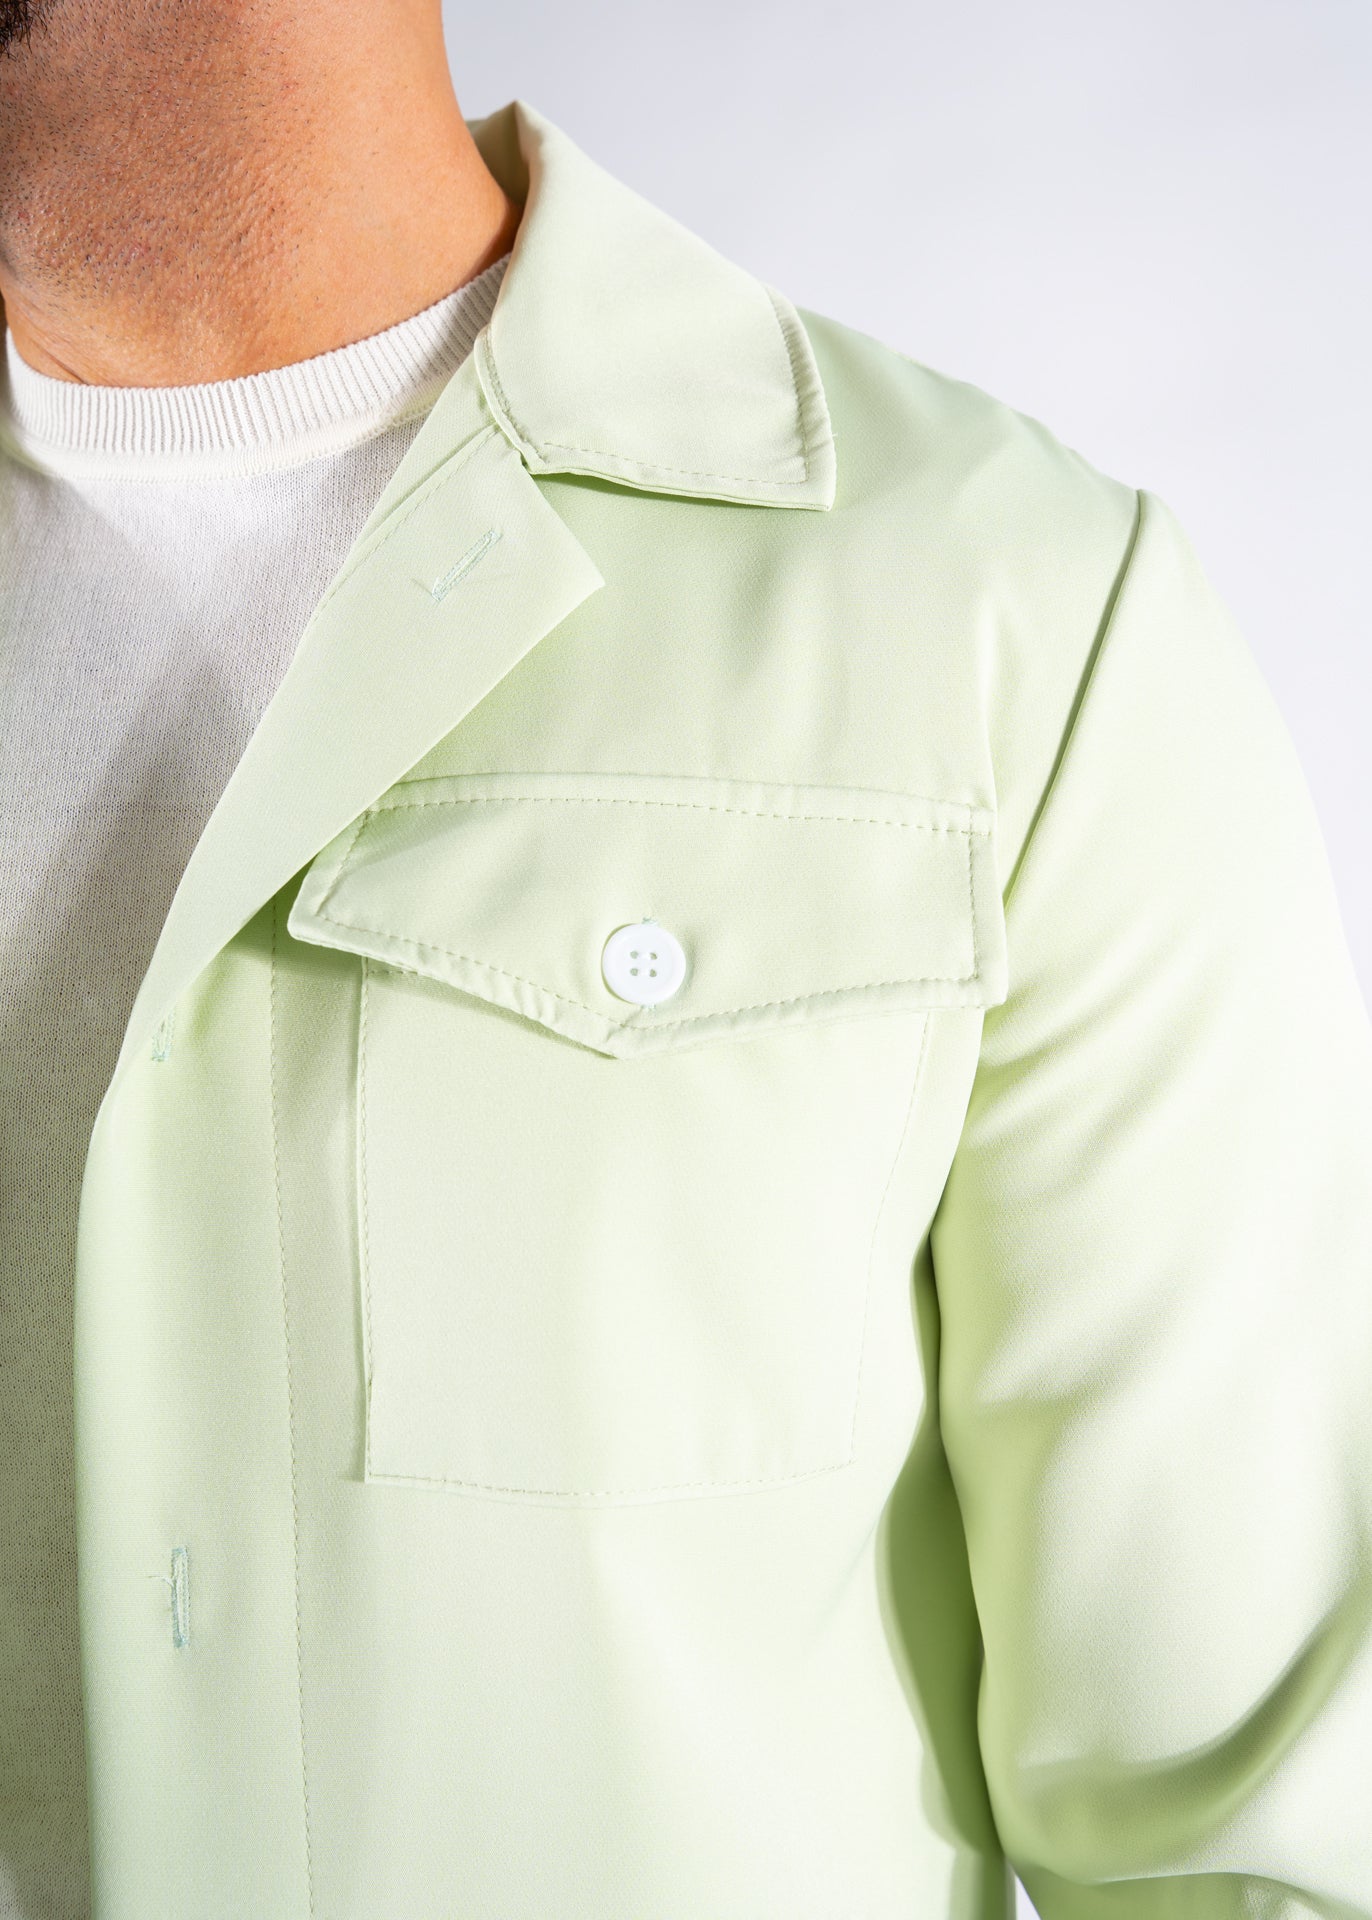 Summer jacket buttons mint